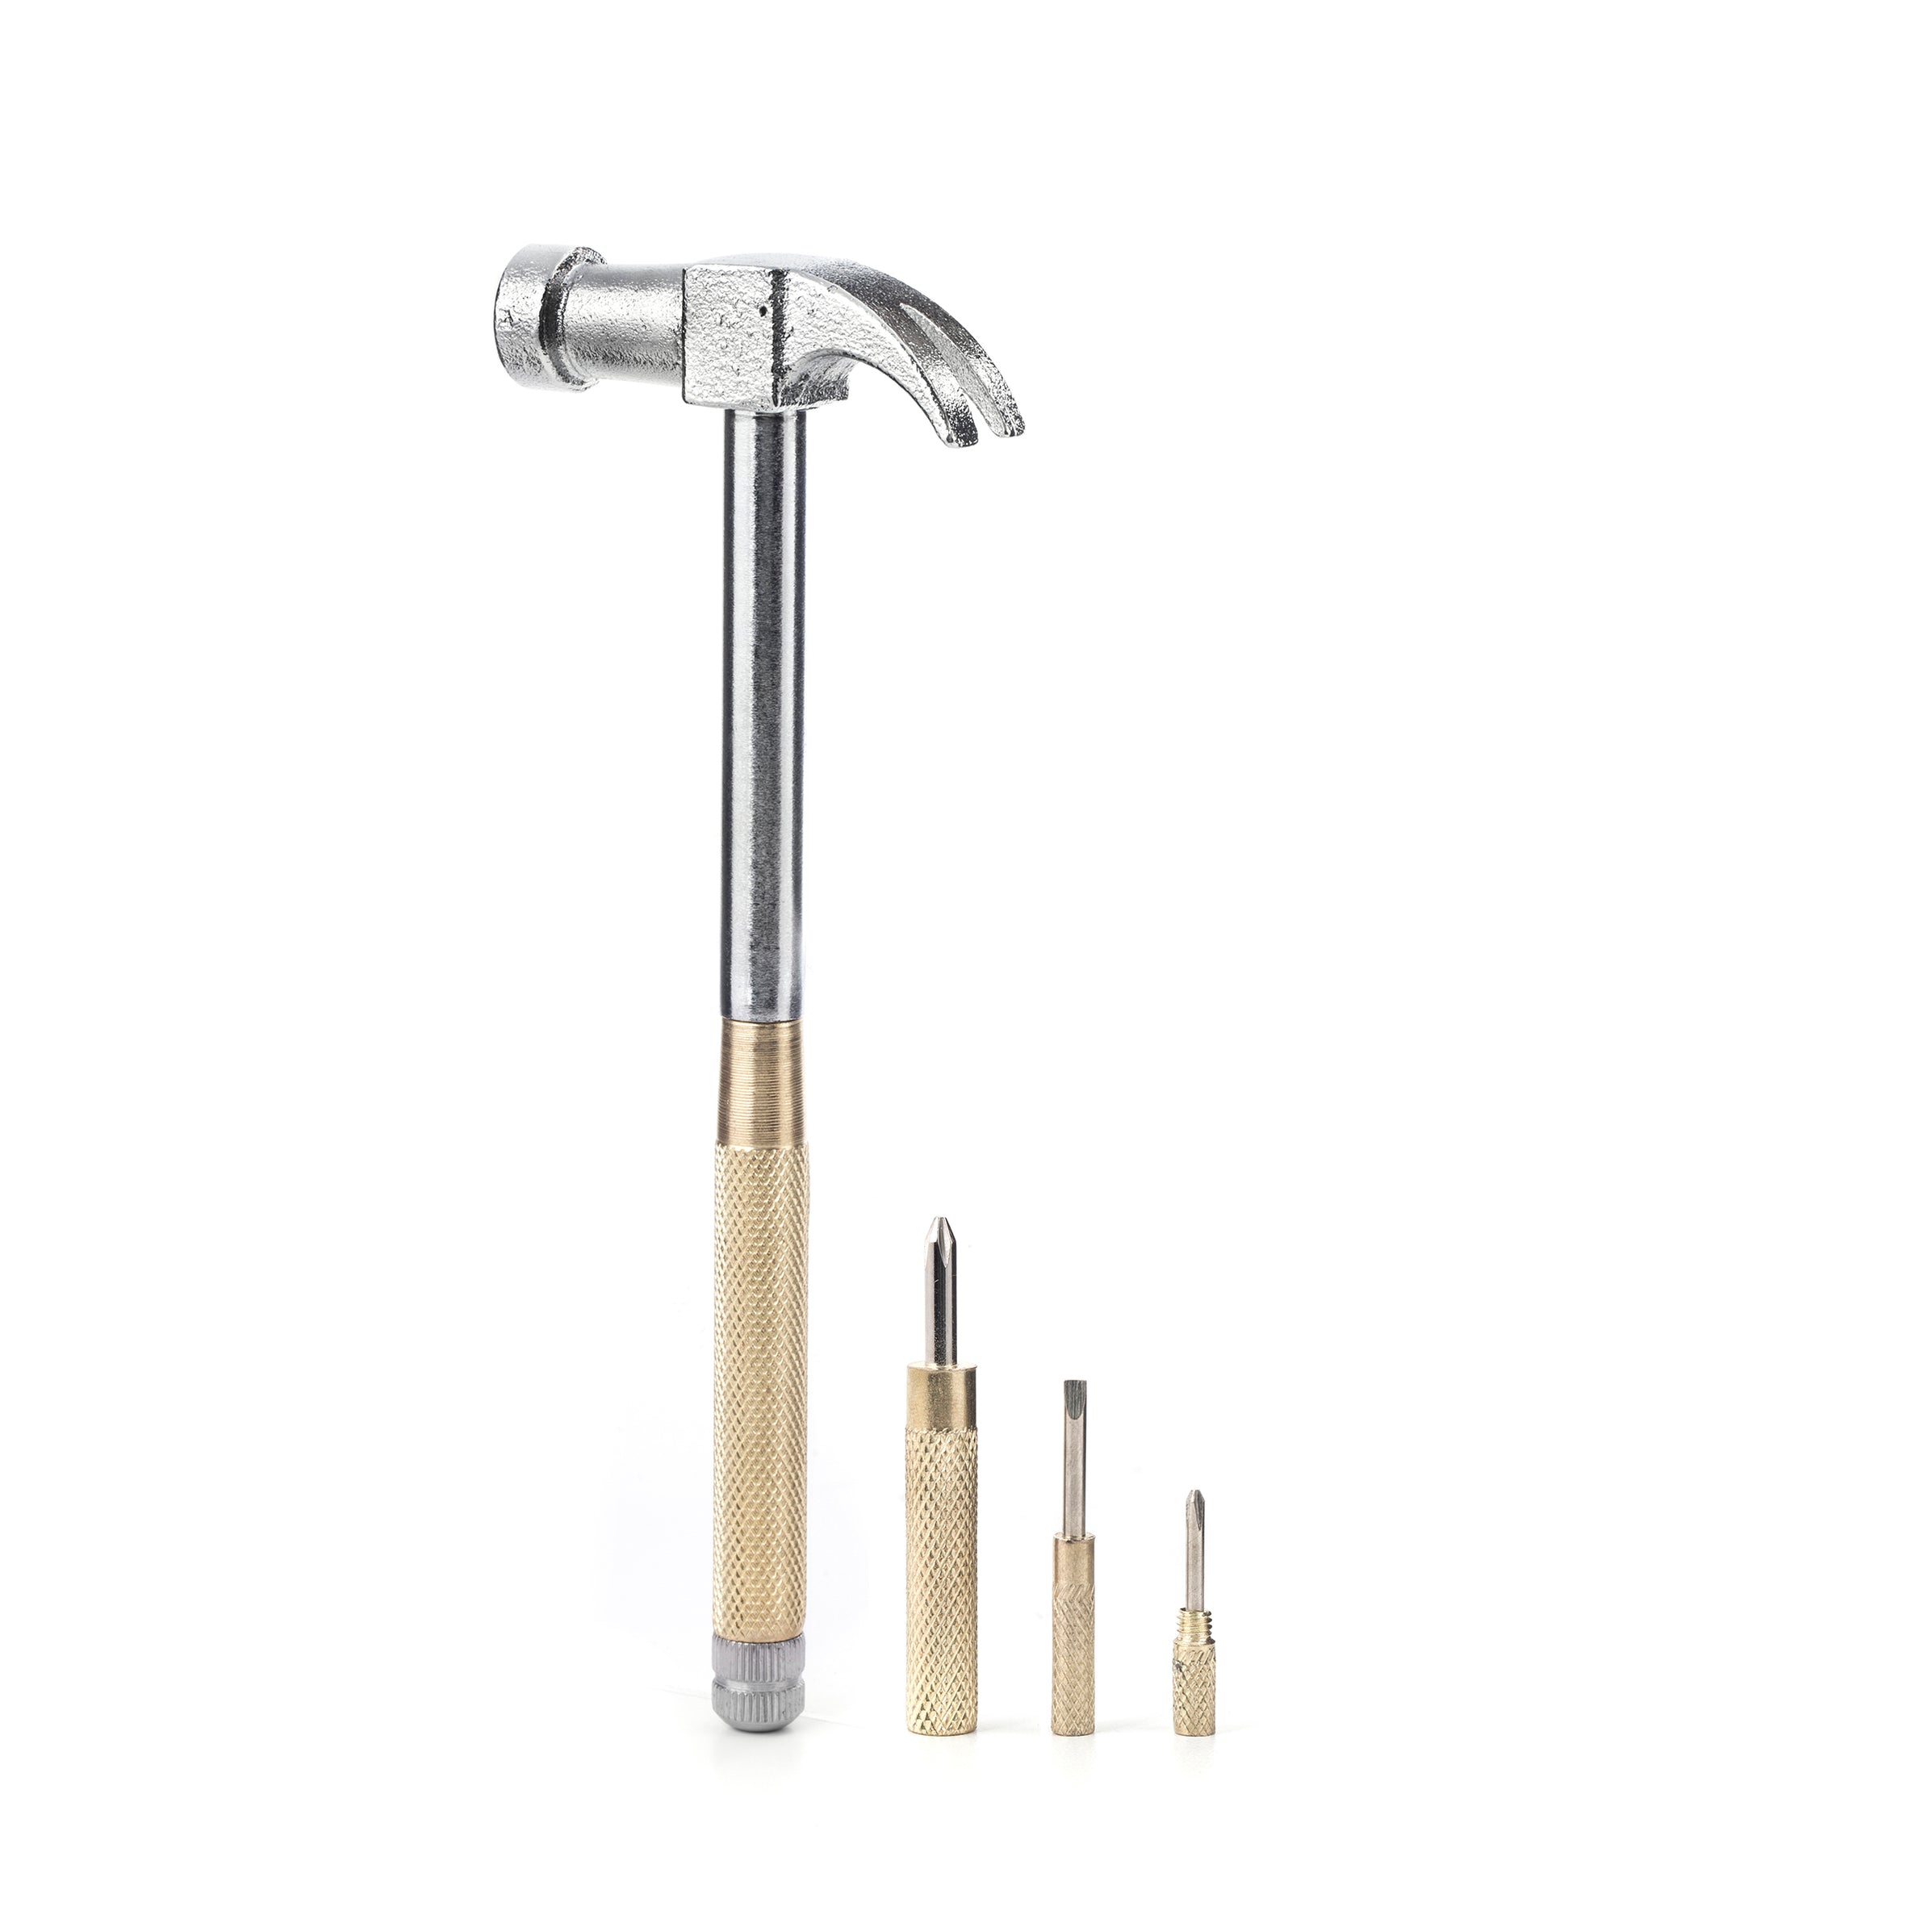 kikkerland wood hammer multi tool